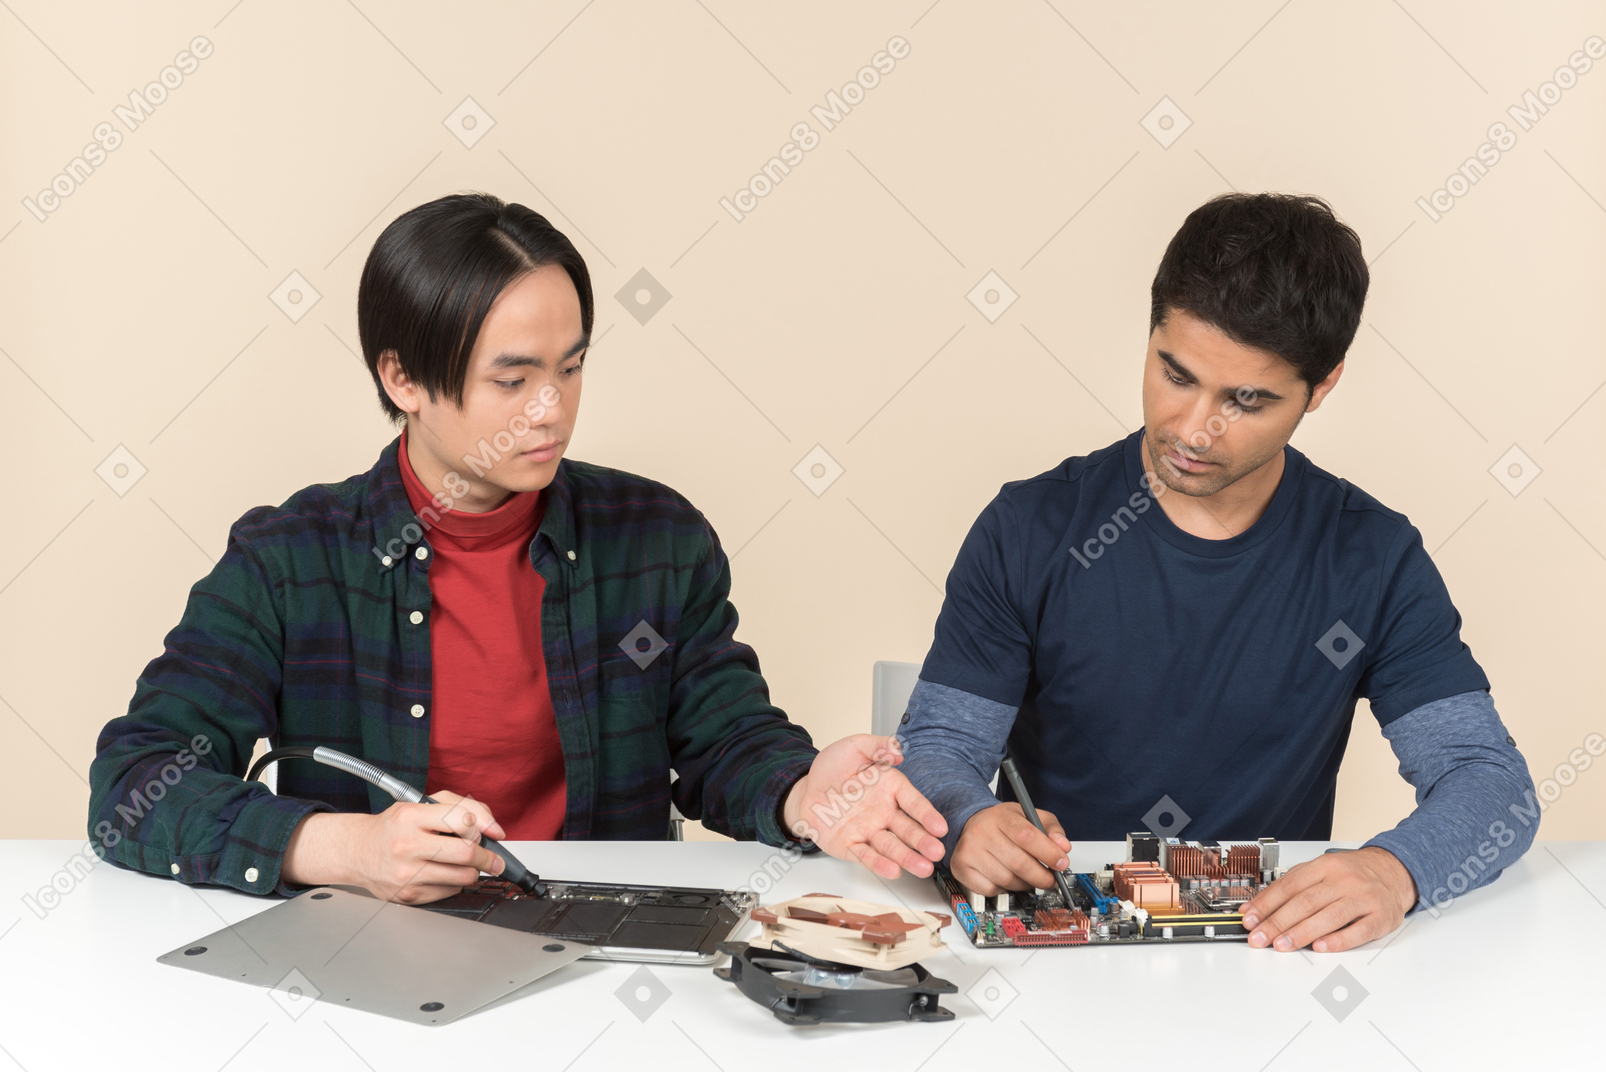 Dois jovens geeks com alguns detalhes sobre a mesa com alguns problemas